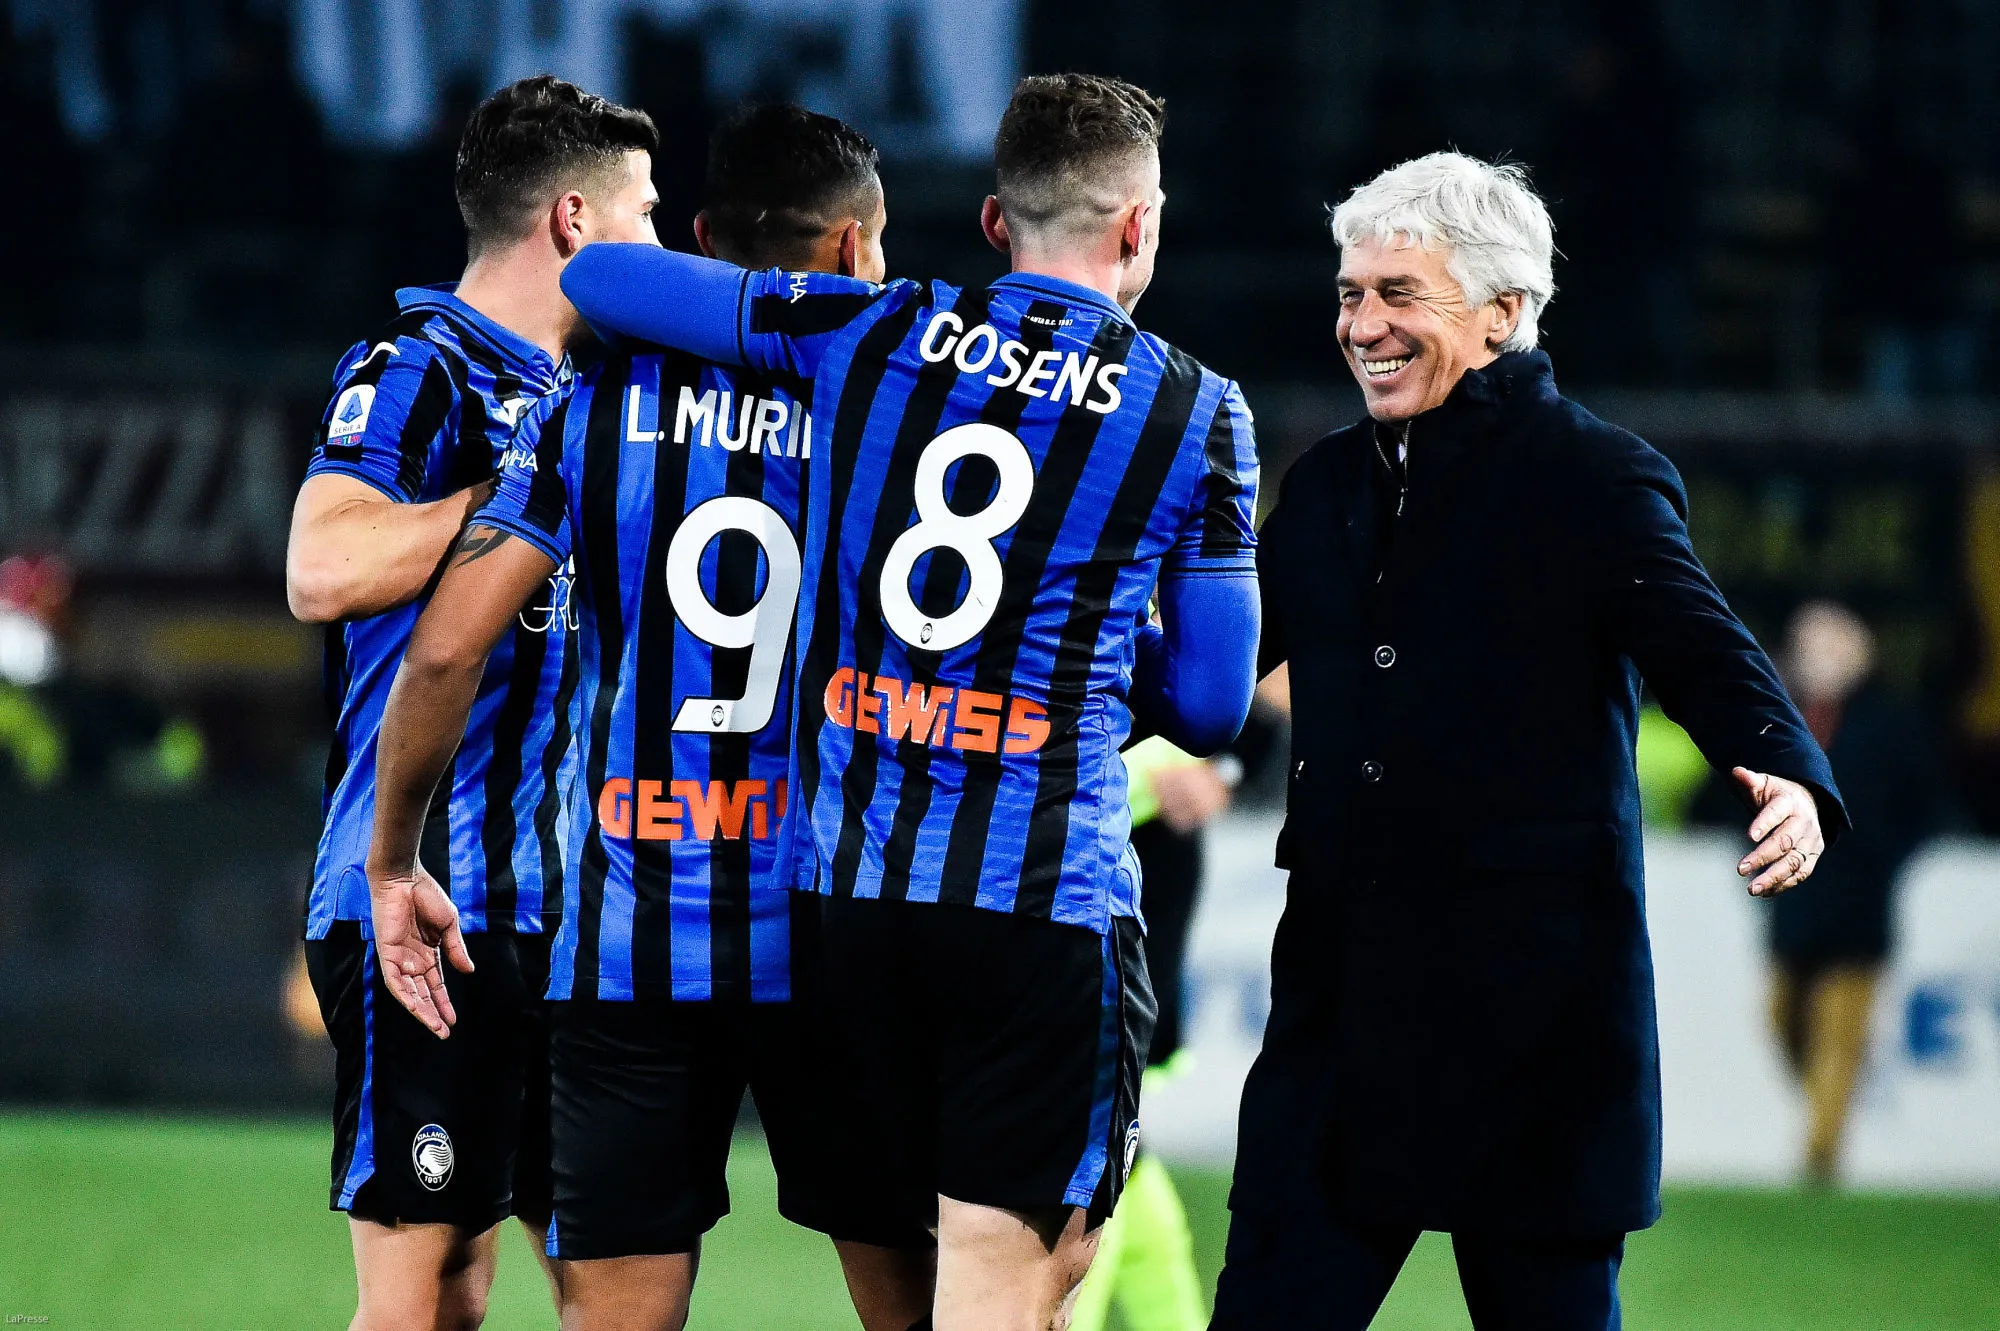 Pronostic Atalanta Bergame Sampdoria : Analyse, prono et cotes du match de Serie A